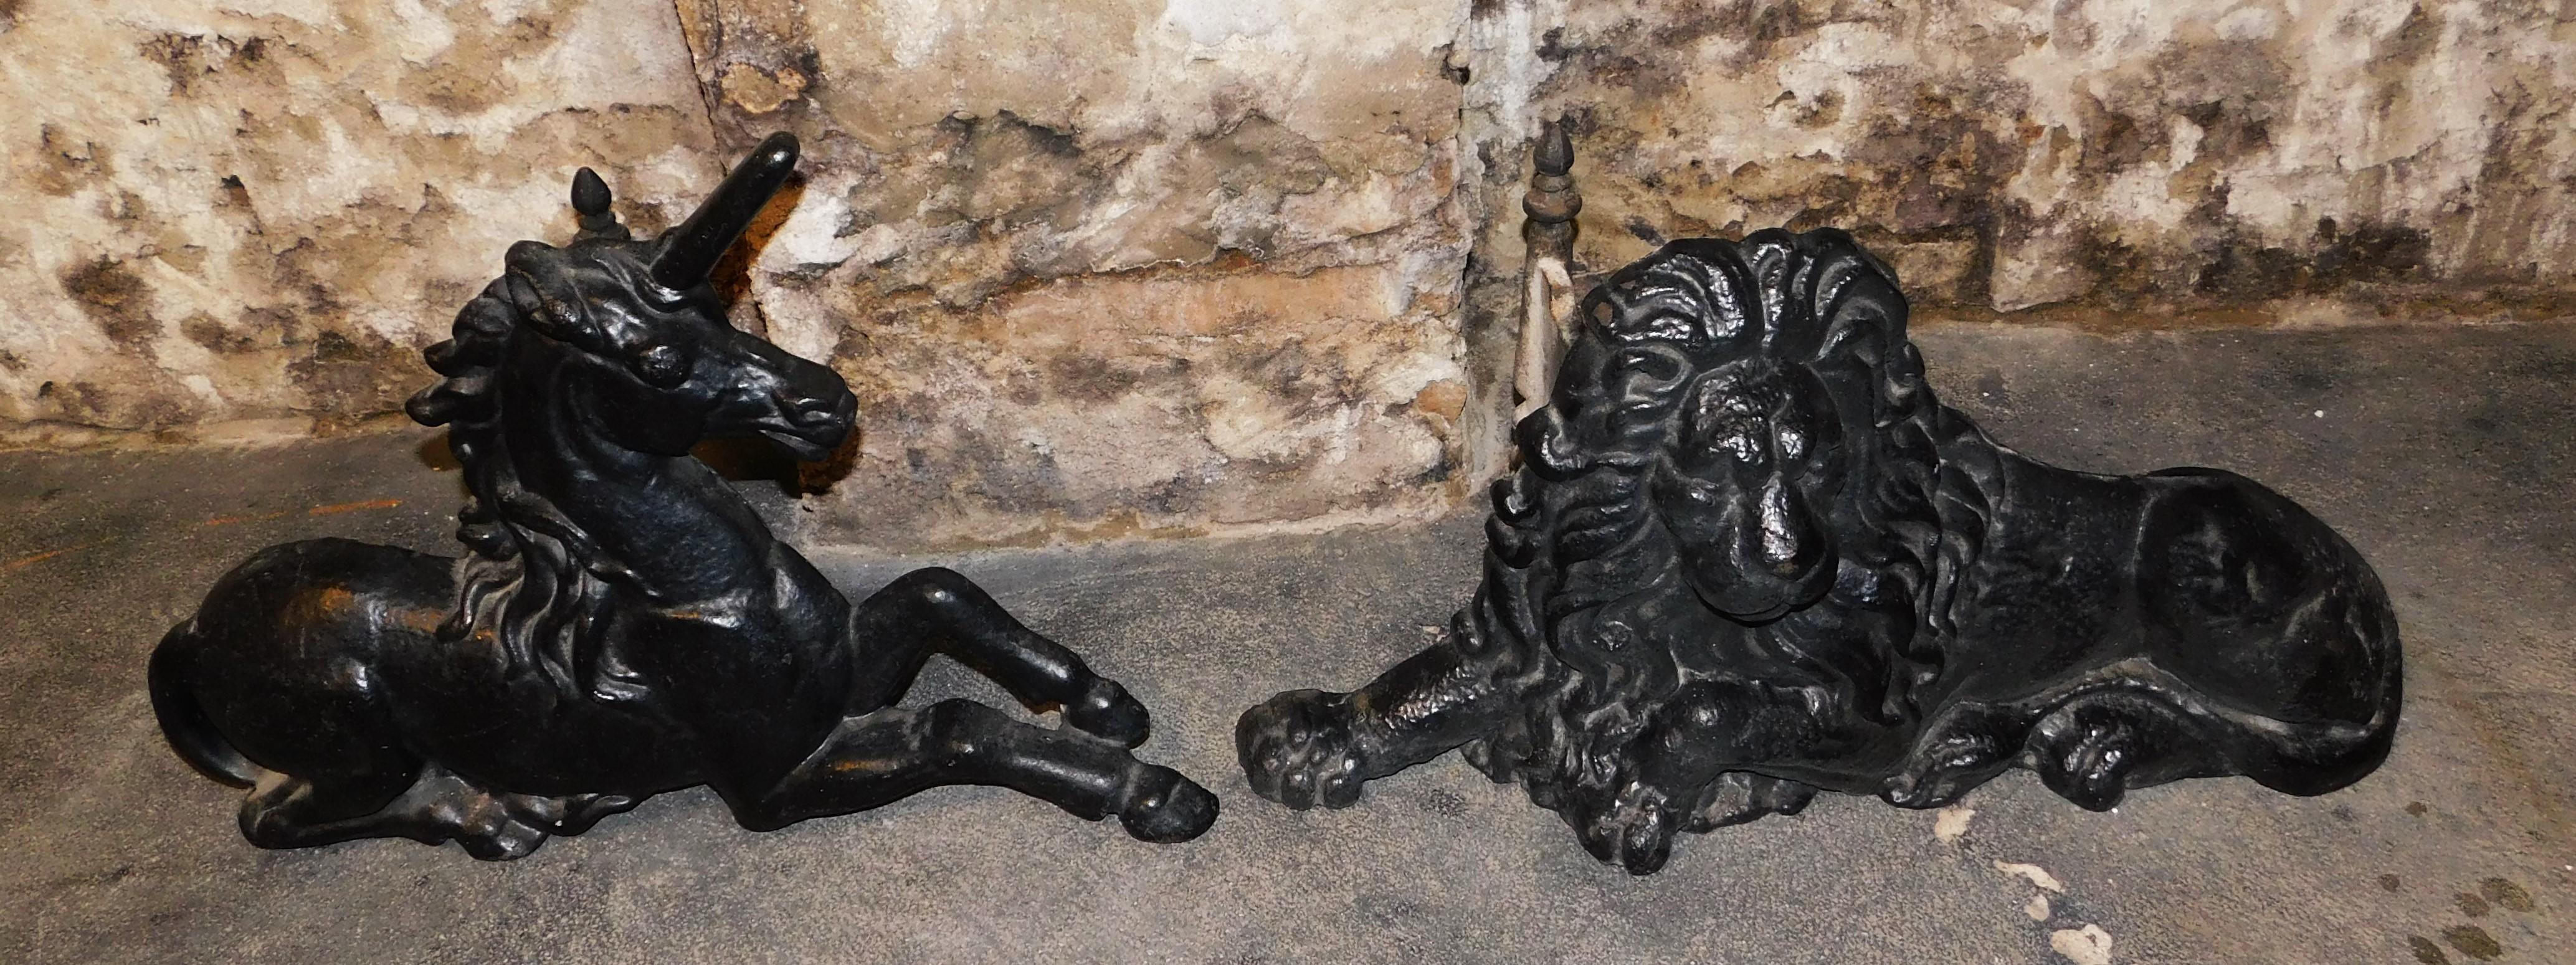 Viktorianischer Löwe und Einhorn aus Gusseisen, schwarz lackiert, als Kaminschmuck. Sie sind Symbole für das Vereinigte Königreich, der Löwe steht für England und das Einhorn für Schottland. Die Kombination geht auf die Thronbesteigung von James I.